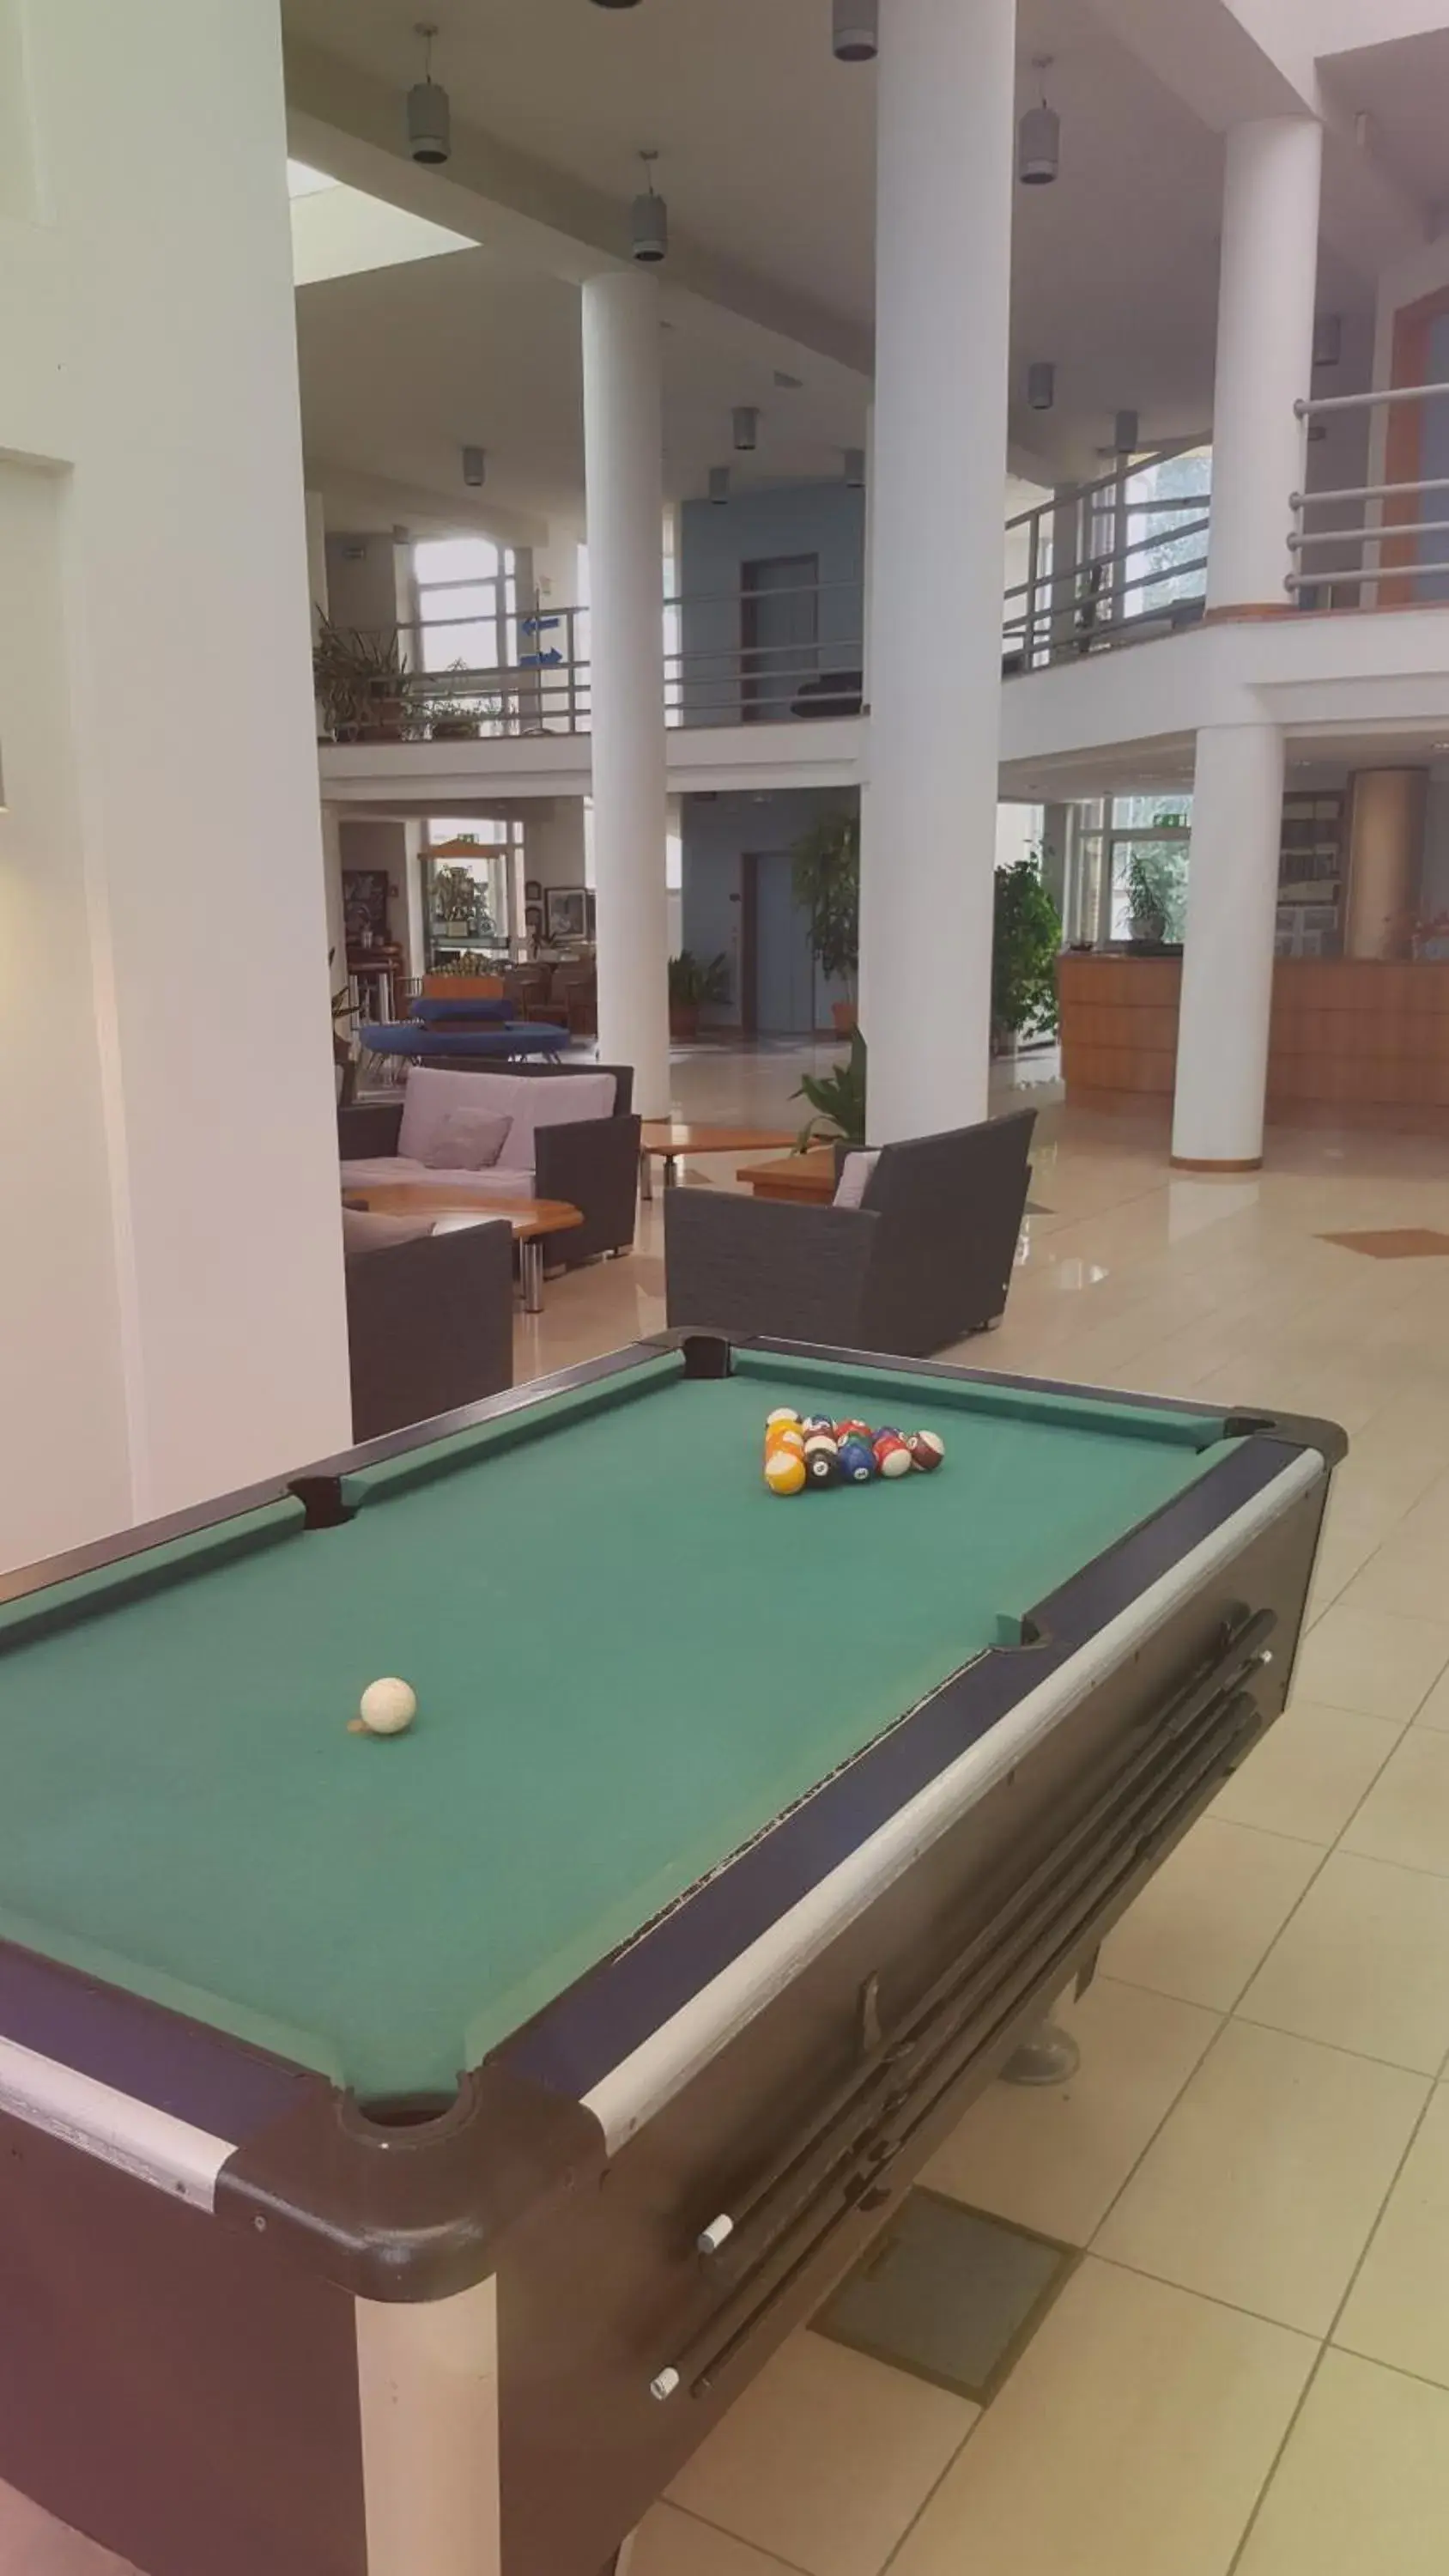 Billiards in Eurhotel